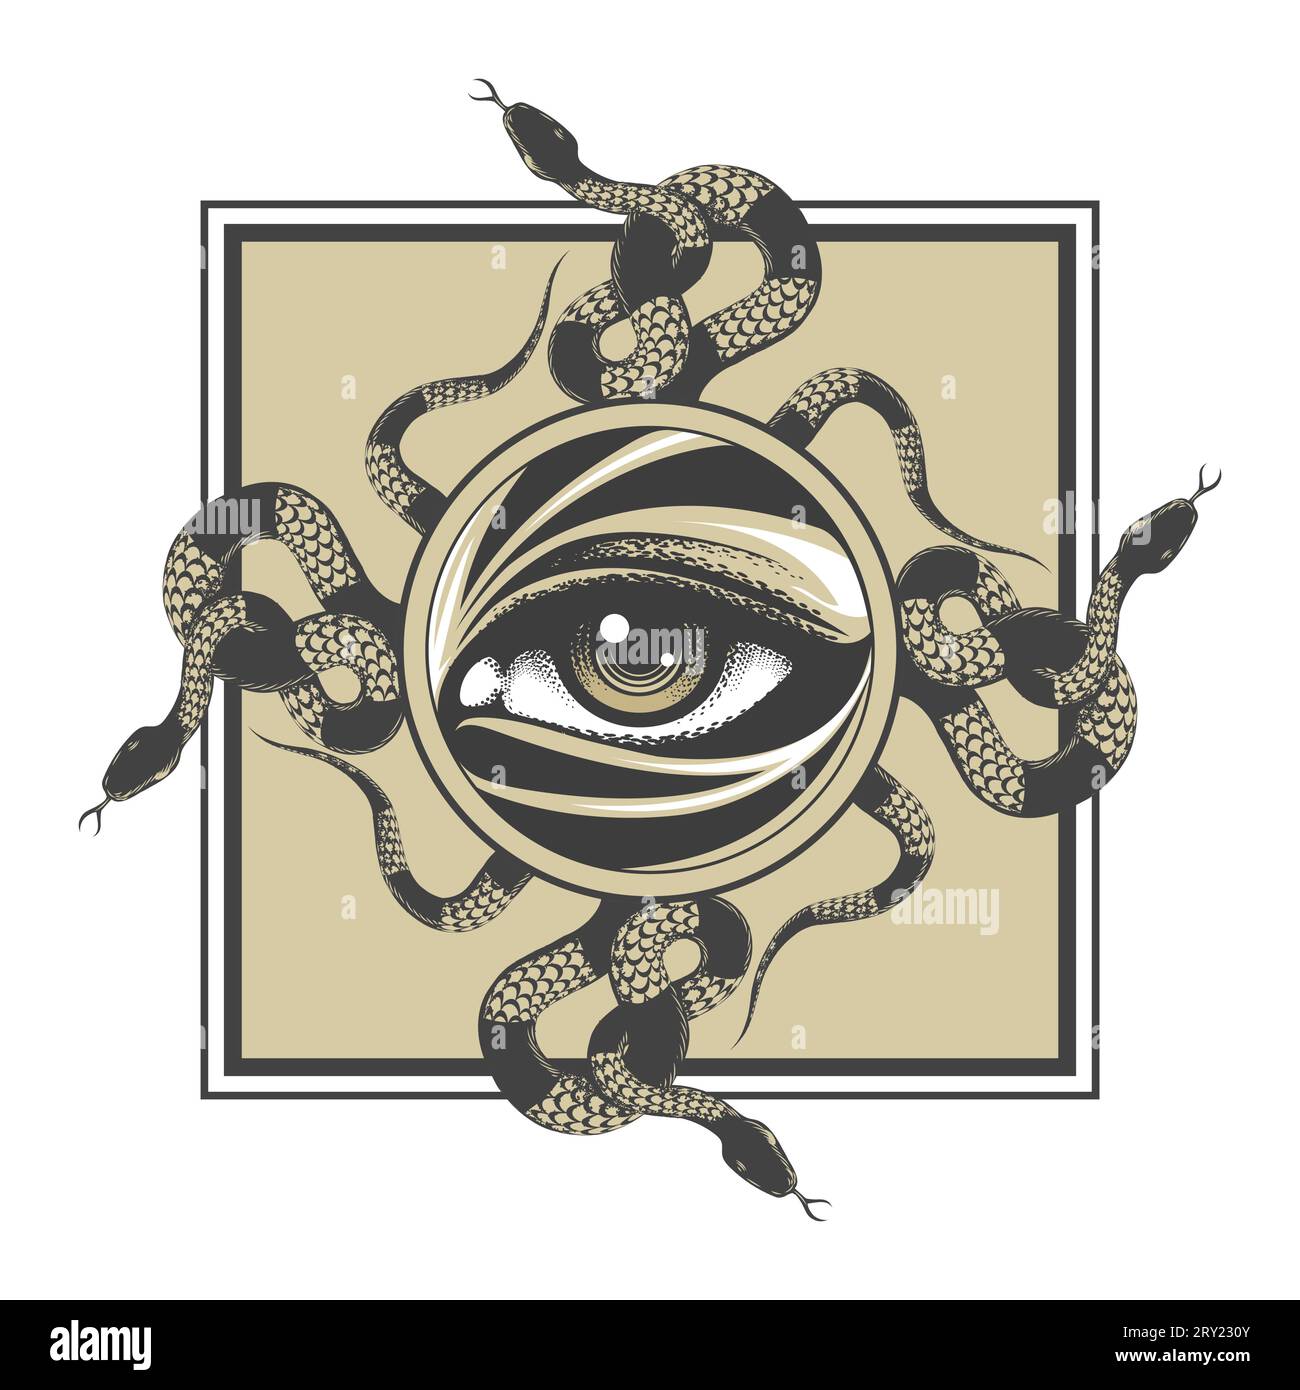 Emblème de tous Seeing Eye et Croix de serpents tatouage occulte ésotérique isolé sur illustration vectorielle blanche Illustration de Vecteur